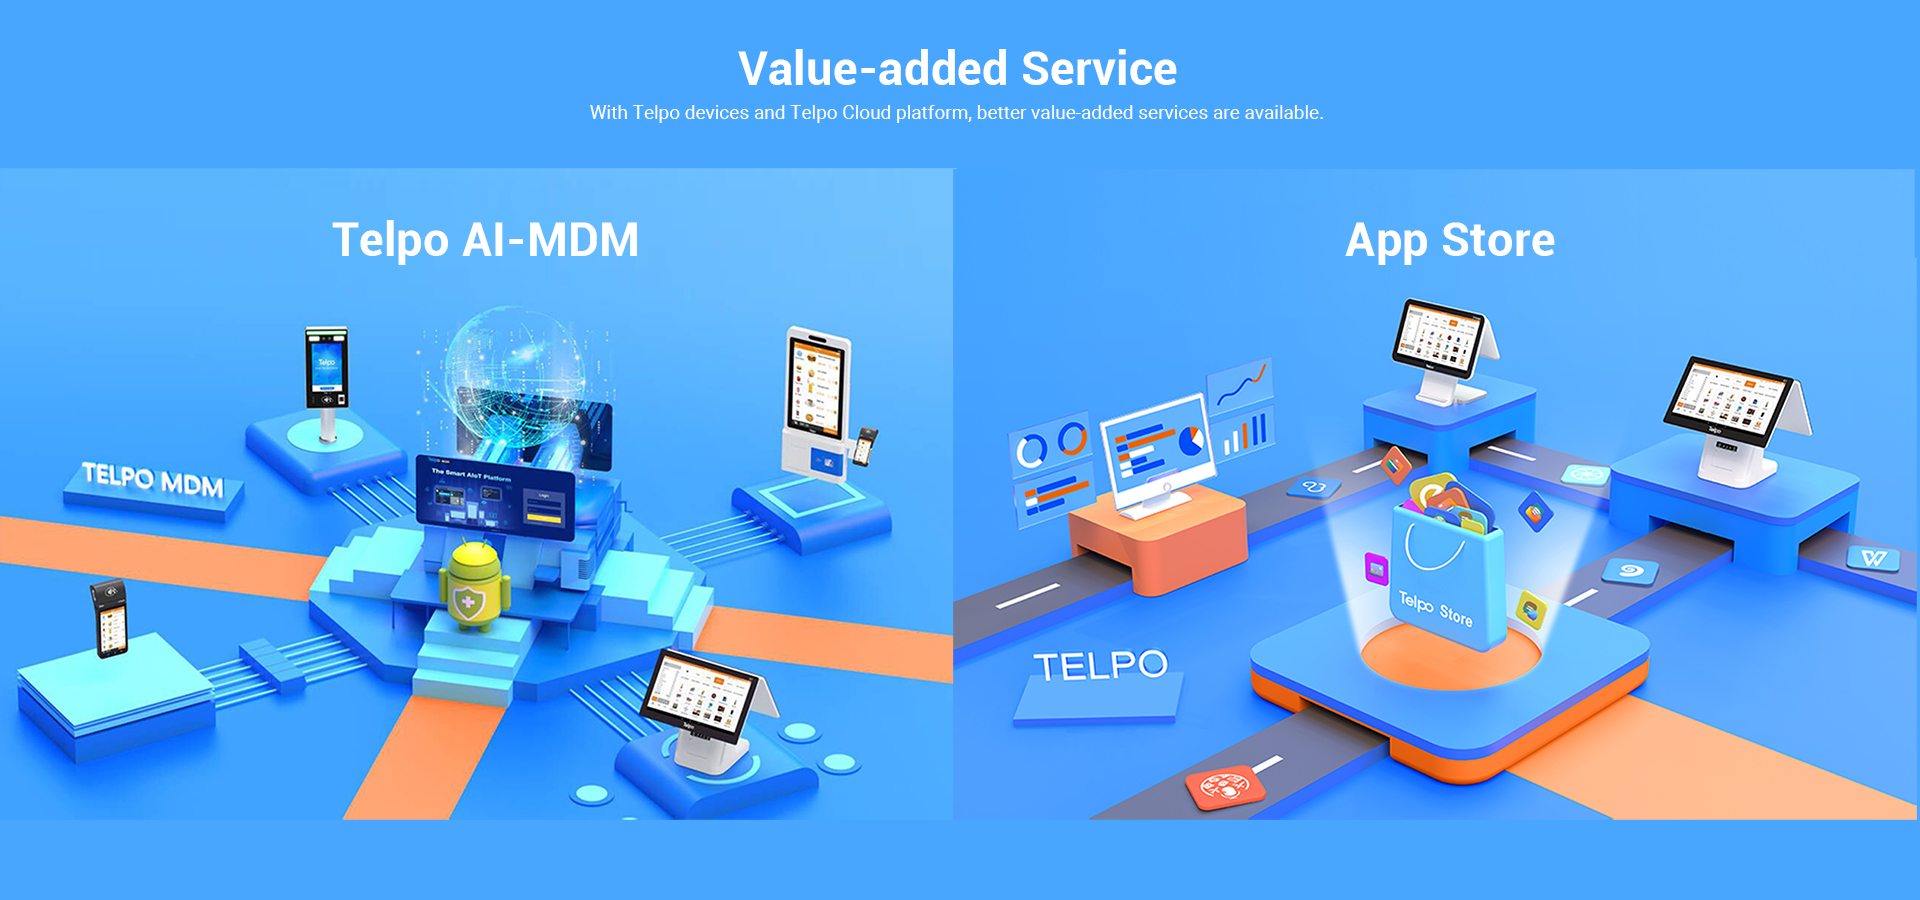  Telpo Cloud platform manages Telpo devices